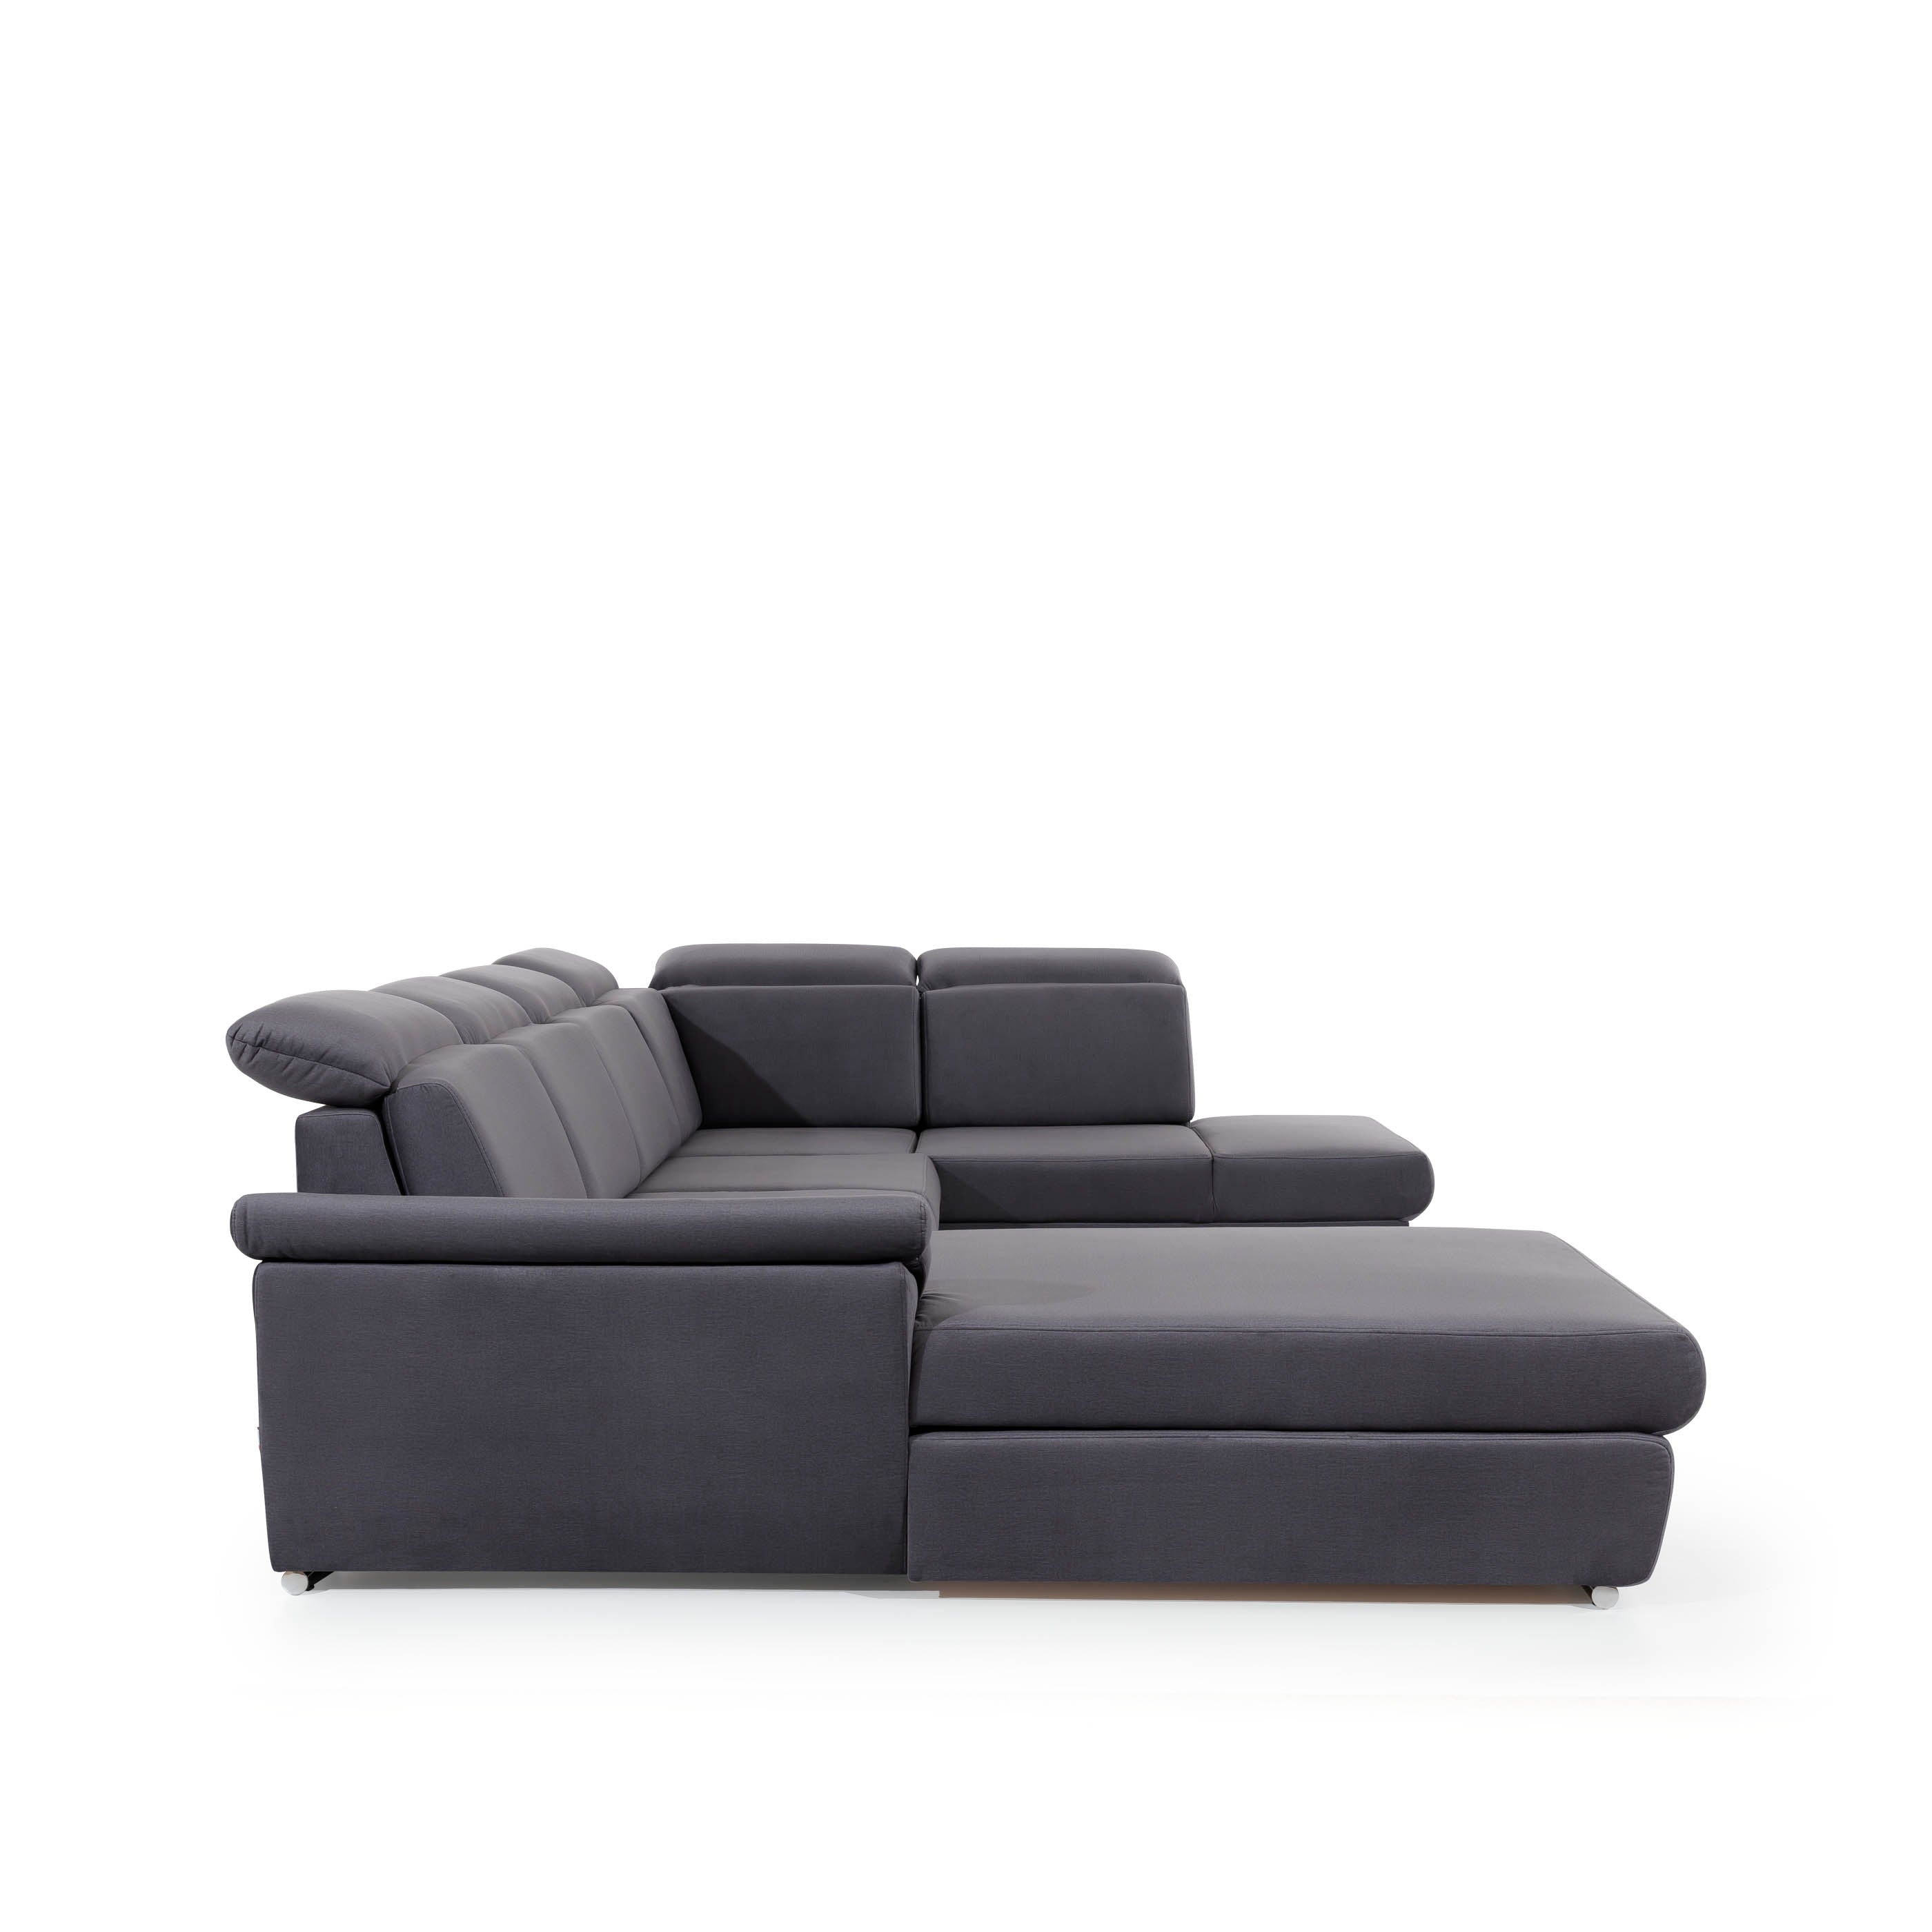 Sofà a U modern (2 chaiselongs) amb llit i bagul - Evanell 